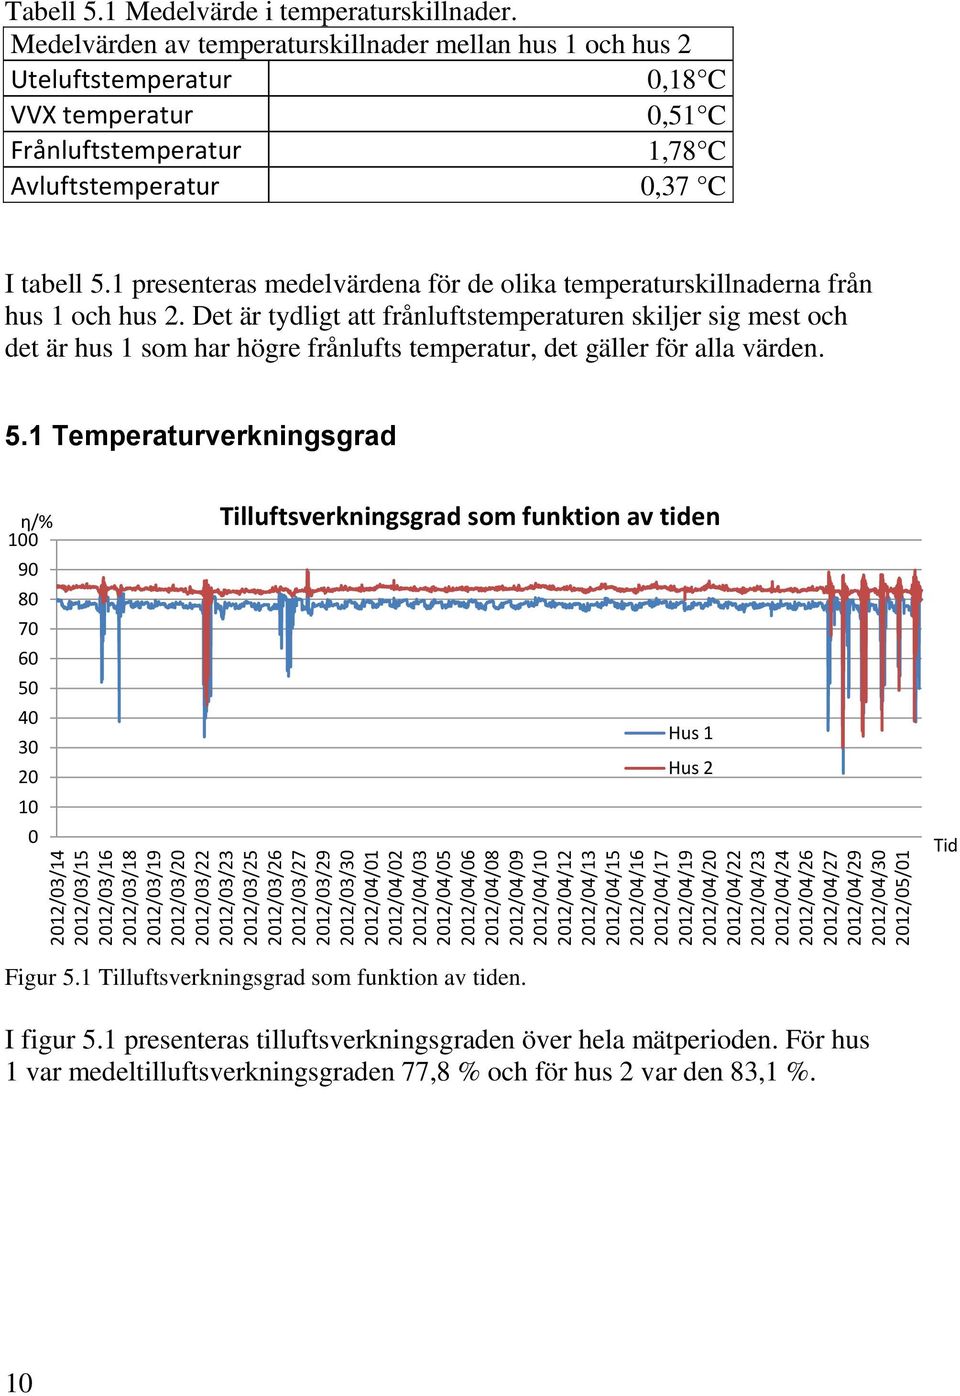 Medelvärden av temperaturskillnader mellan hus 1 och hus 2 Uteluftstemperatur,18 C VVX temperatur,51 C Frånluftstemperatur 1,78 C Avluftstemperatur,37 C I tabell 5.